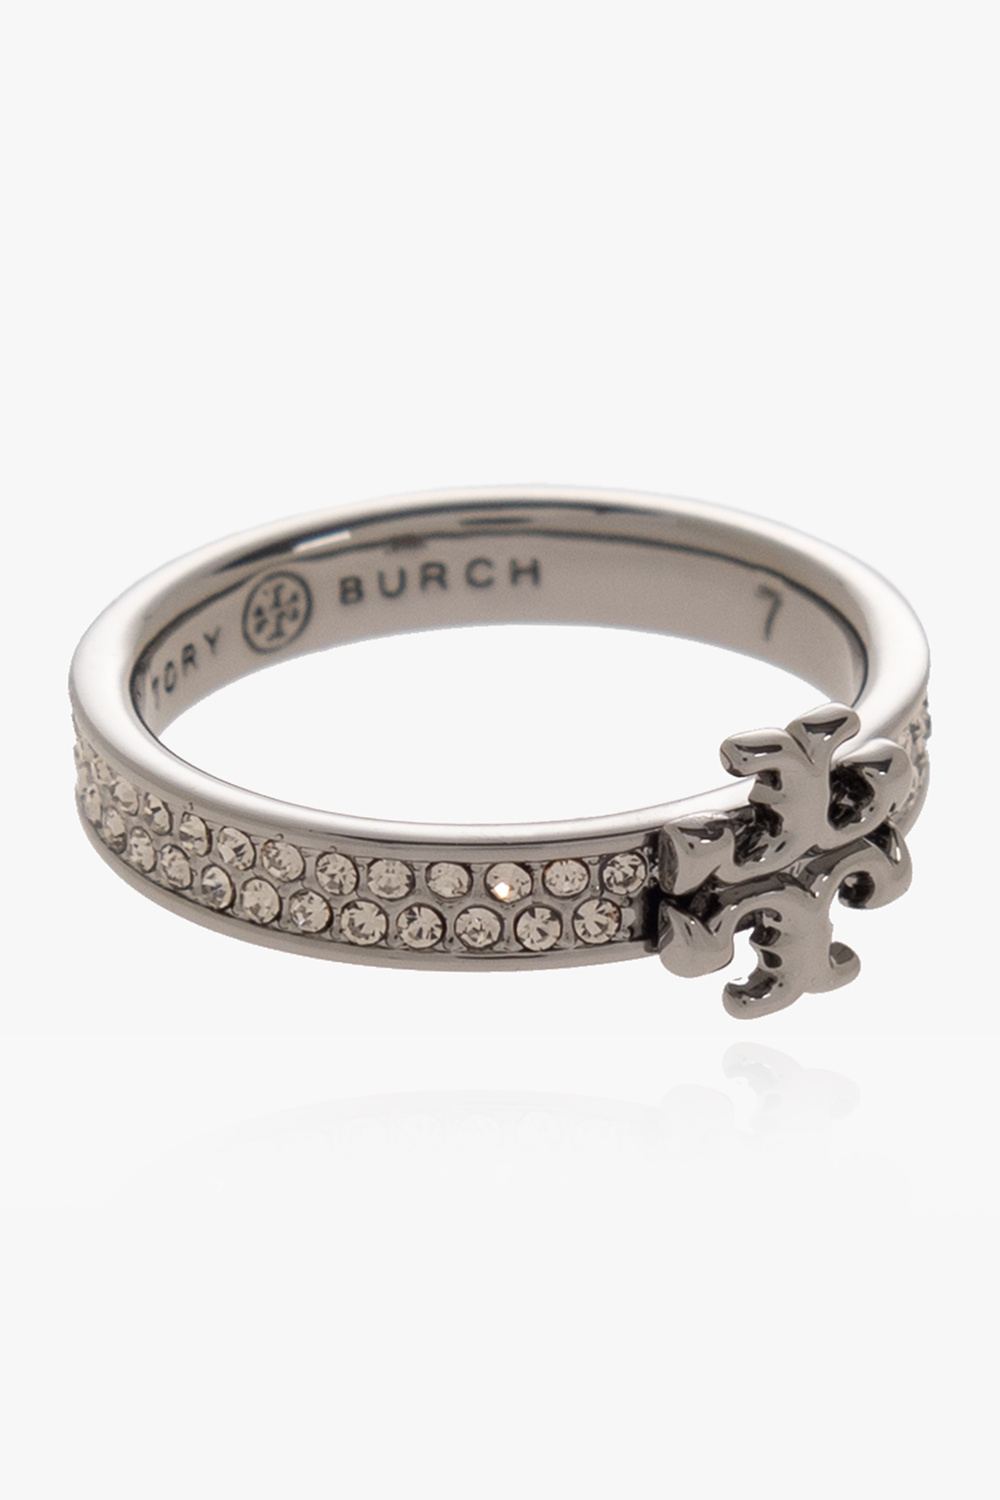 Tory Burch ‘Kira’ ring